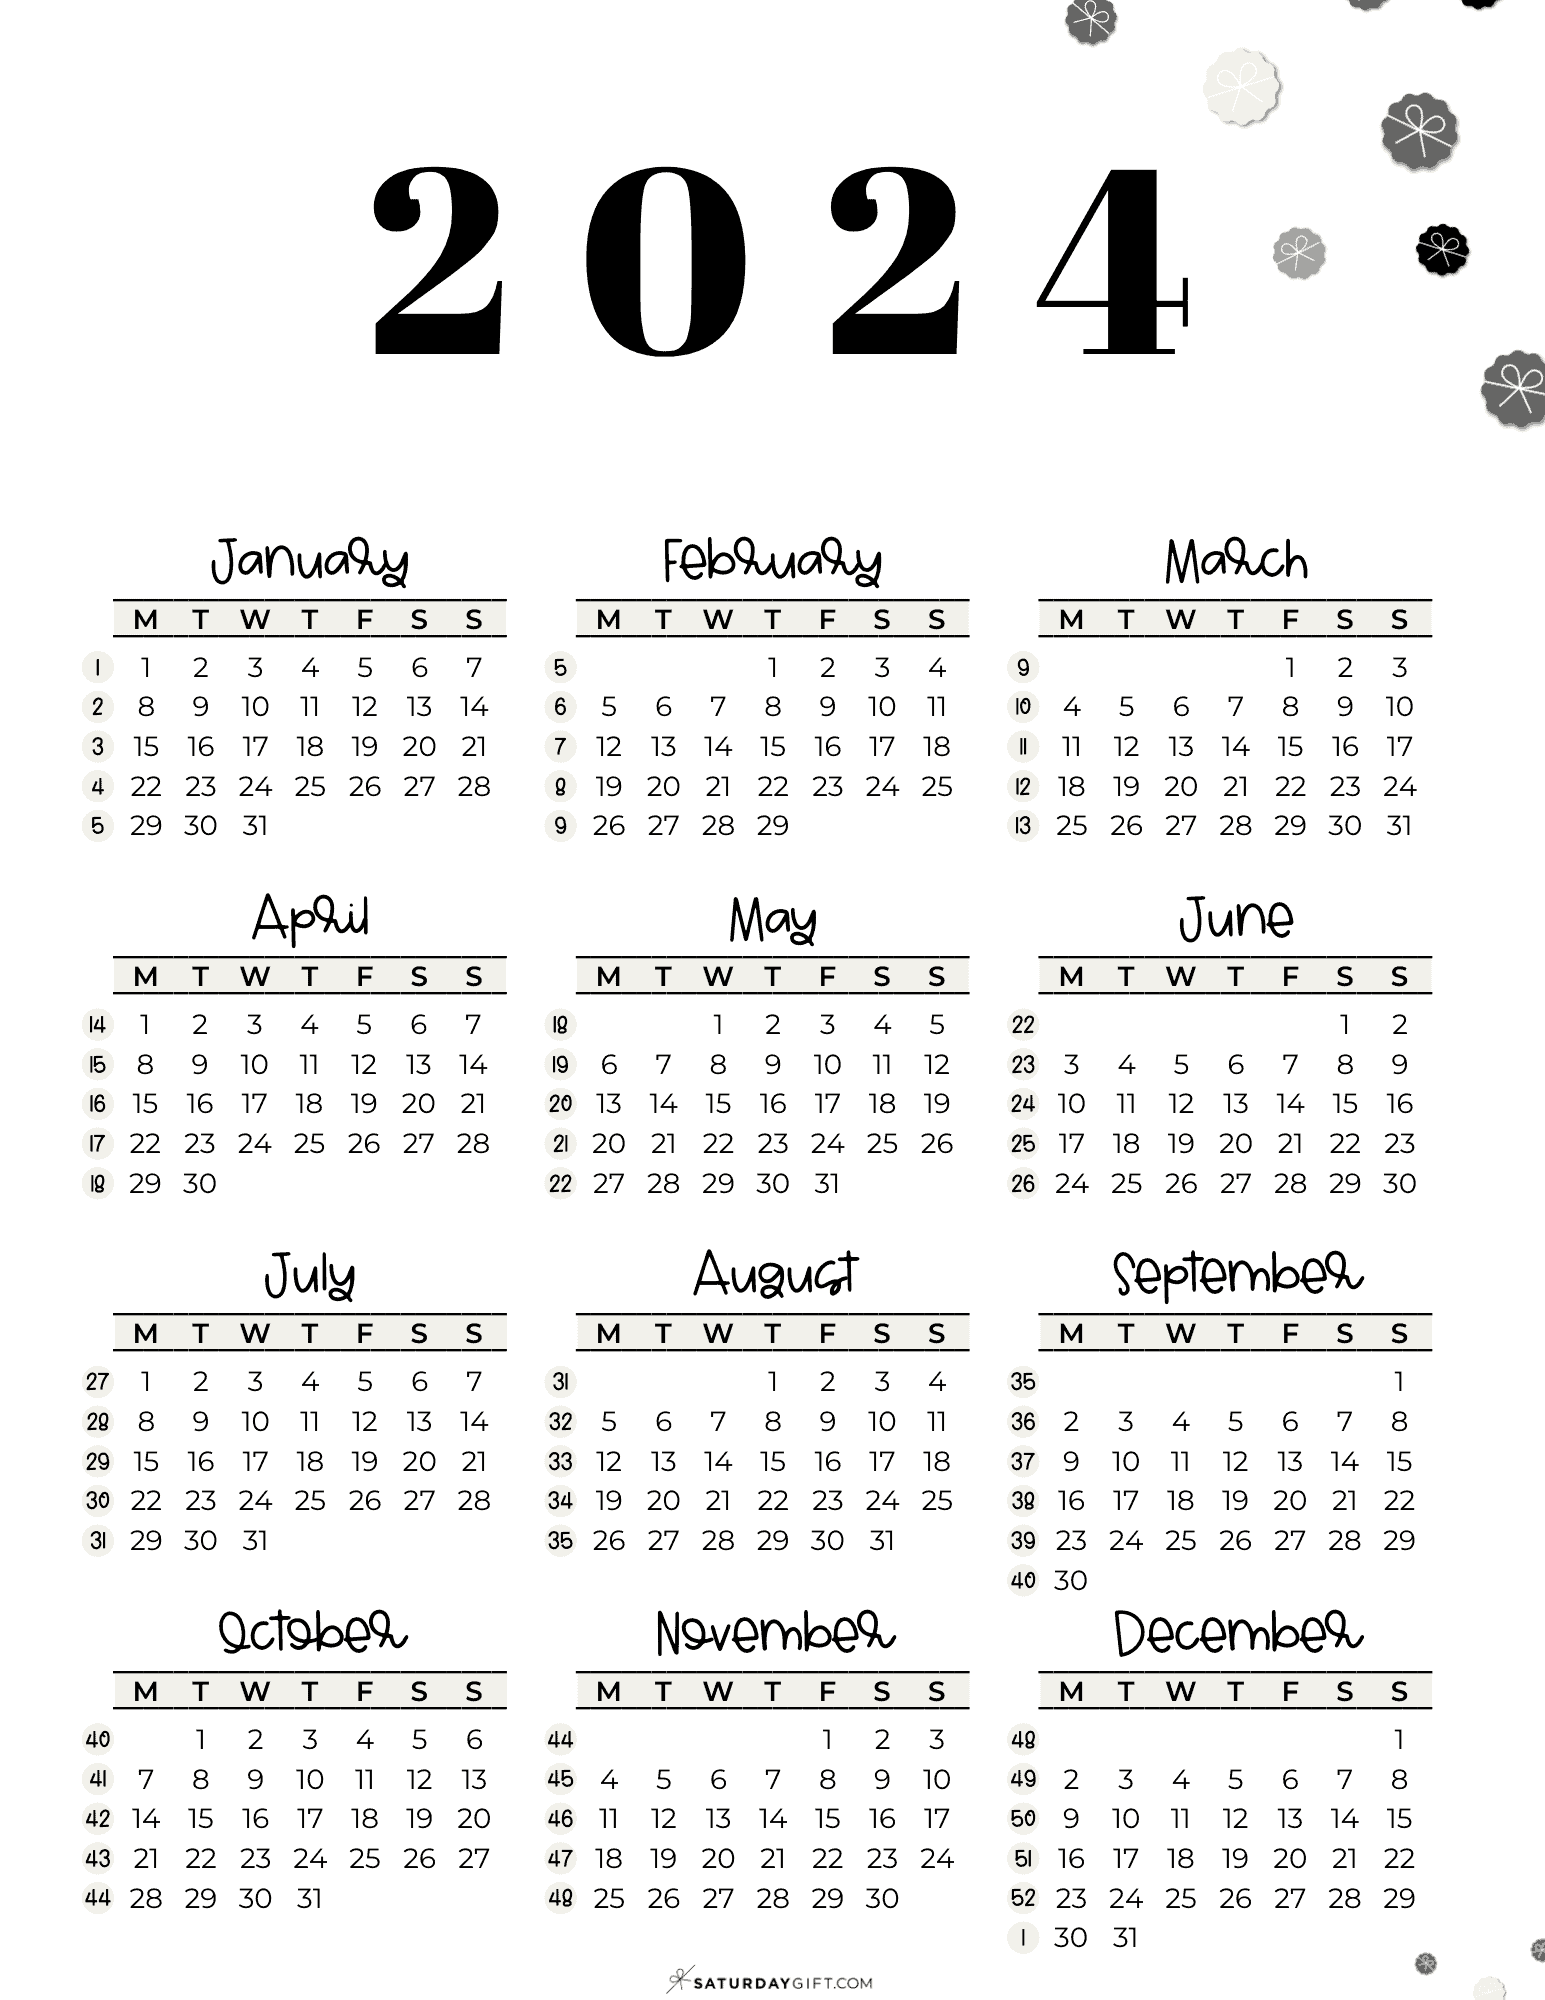 2024 Calendar Printable With Week Numbers List Dec 2024 Calendar - Free Printable 2024 Calendar With Weeks